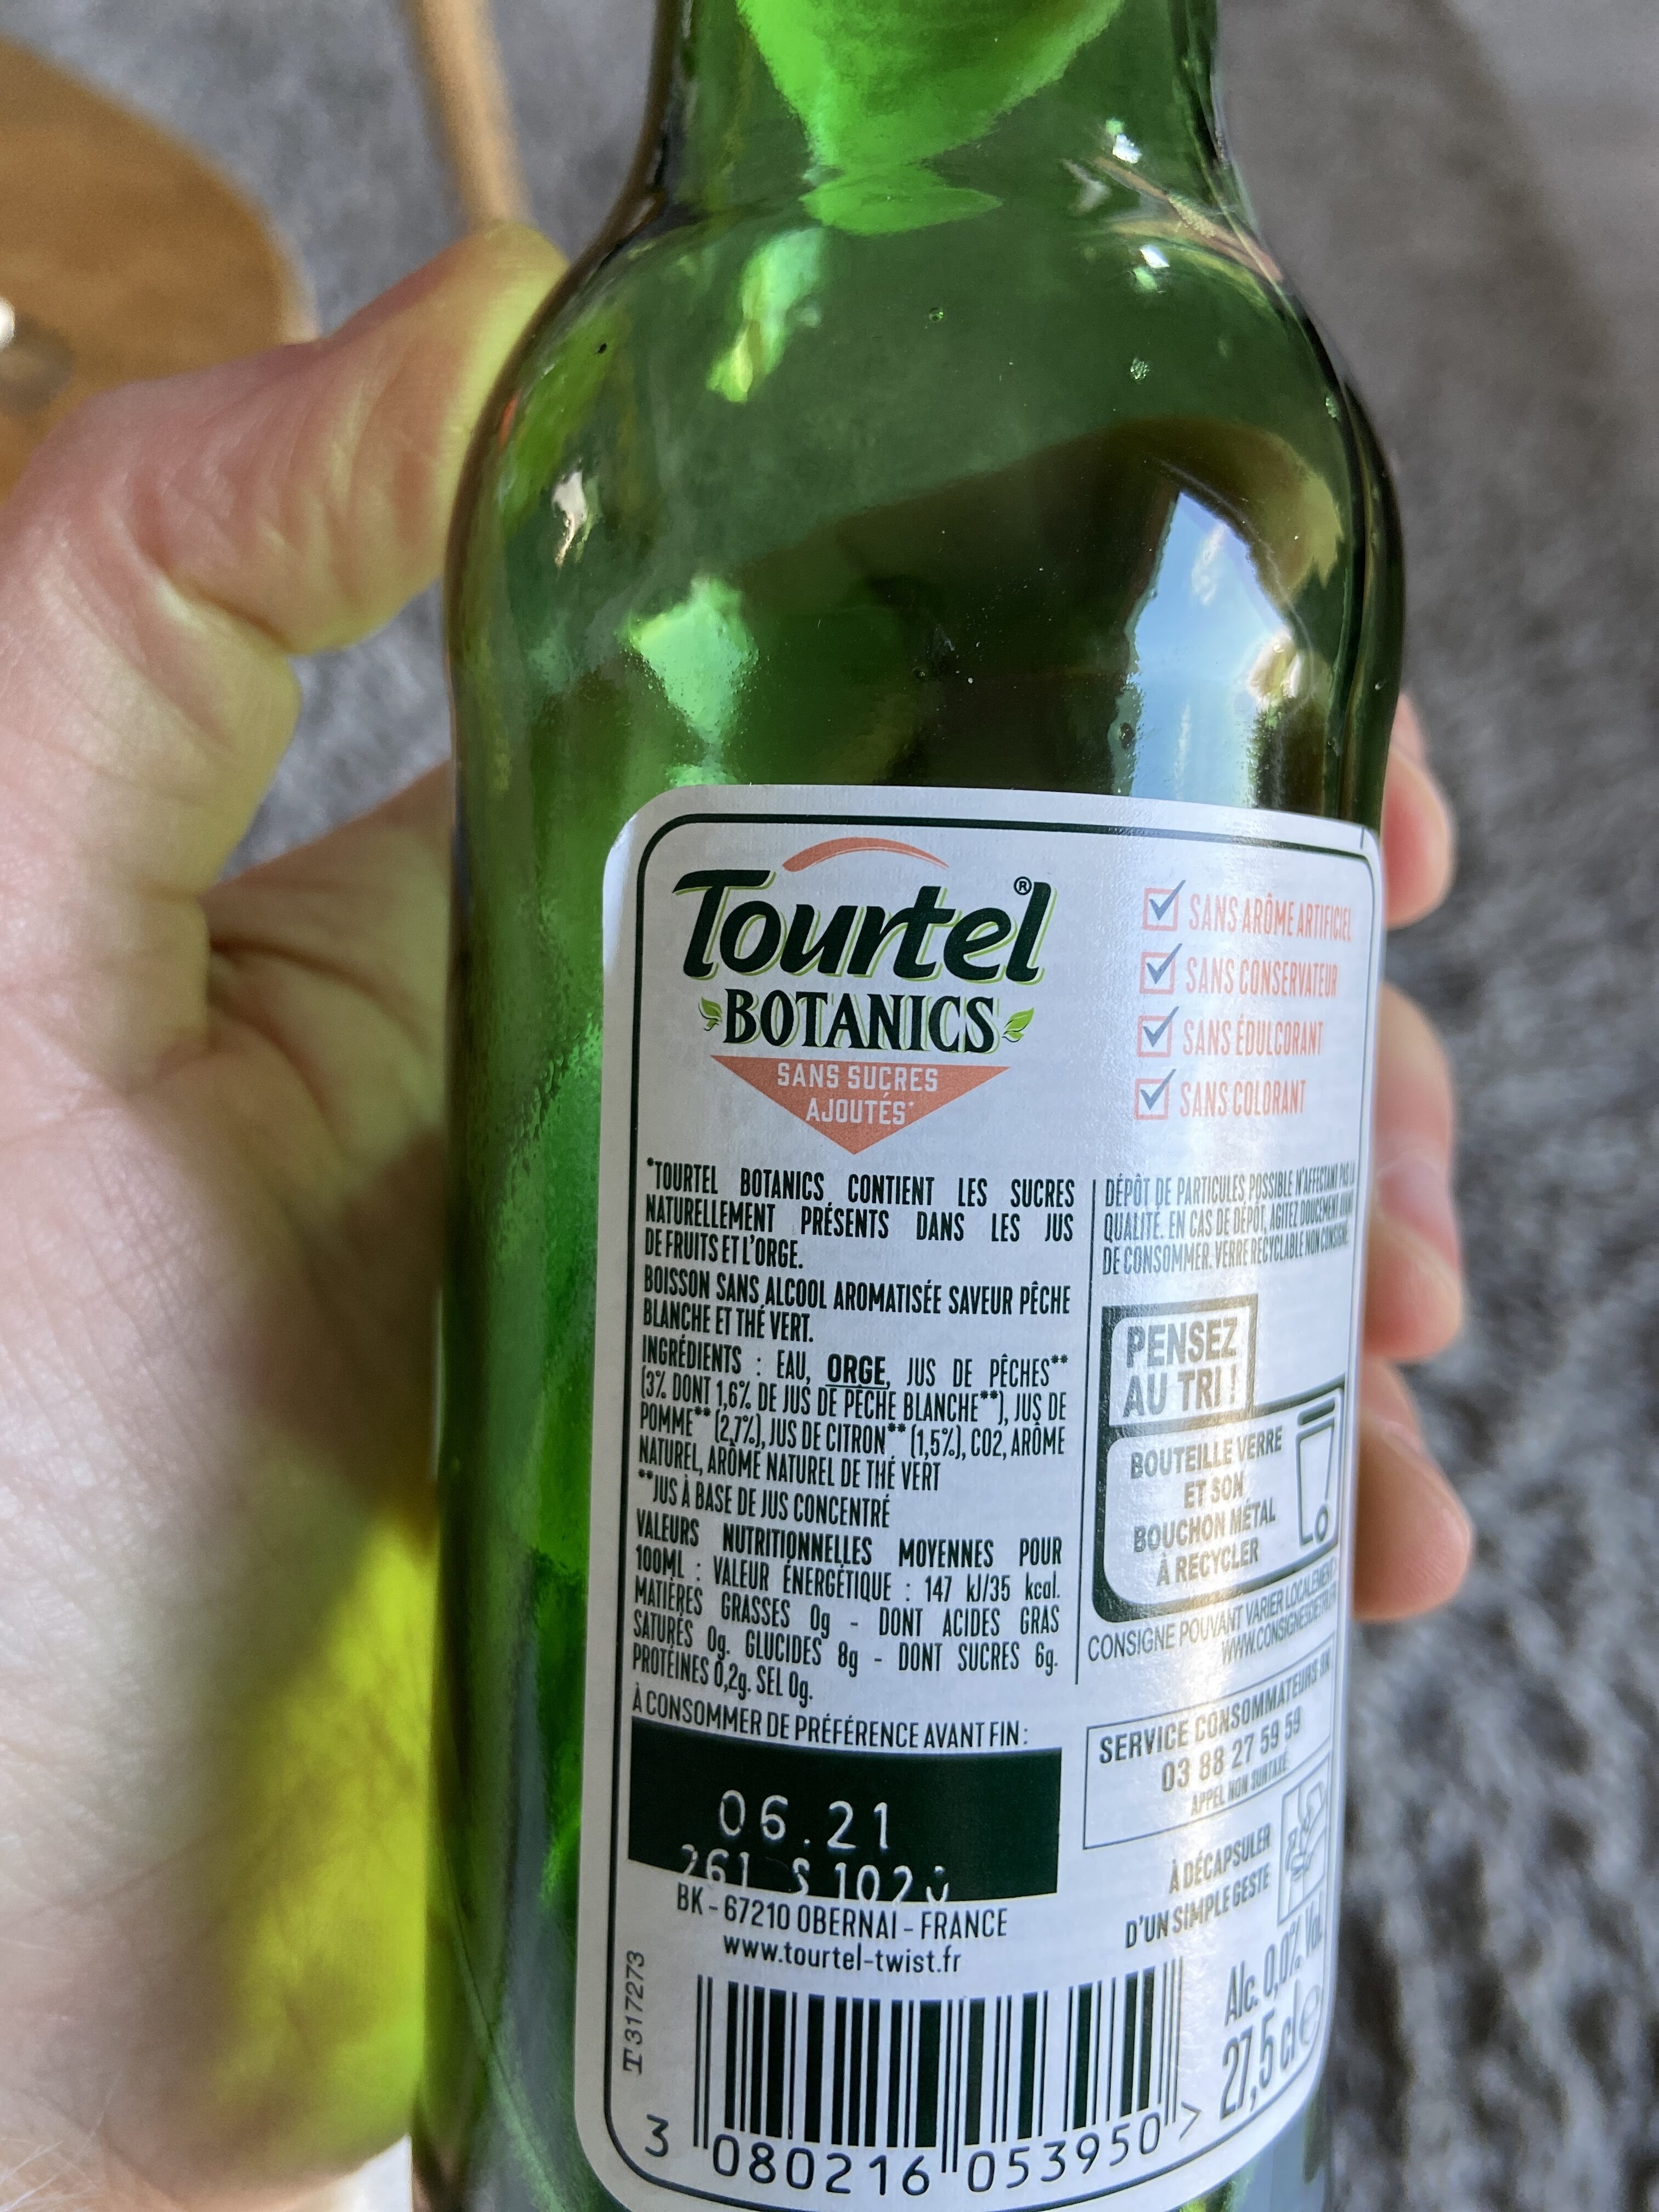 Tourtel 27.5 cl Tourtel Botanics Pêche Thé 0.0 DEGRE ALCOOL - Ingredients - fr